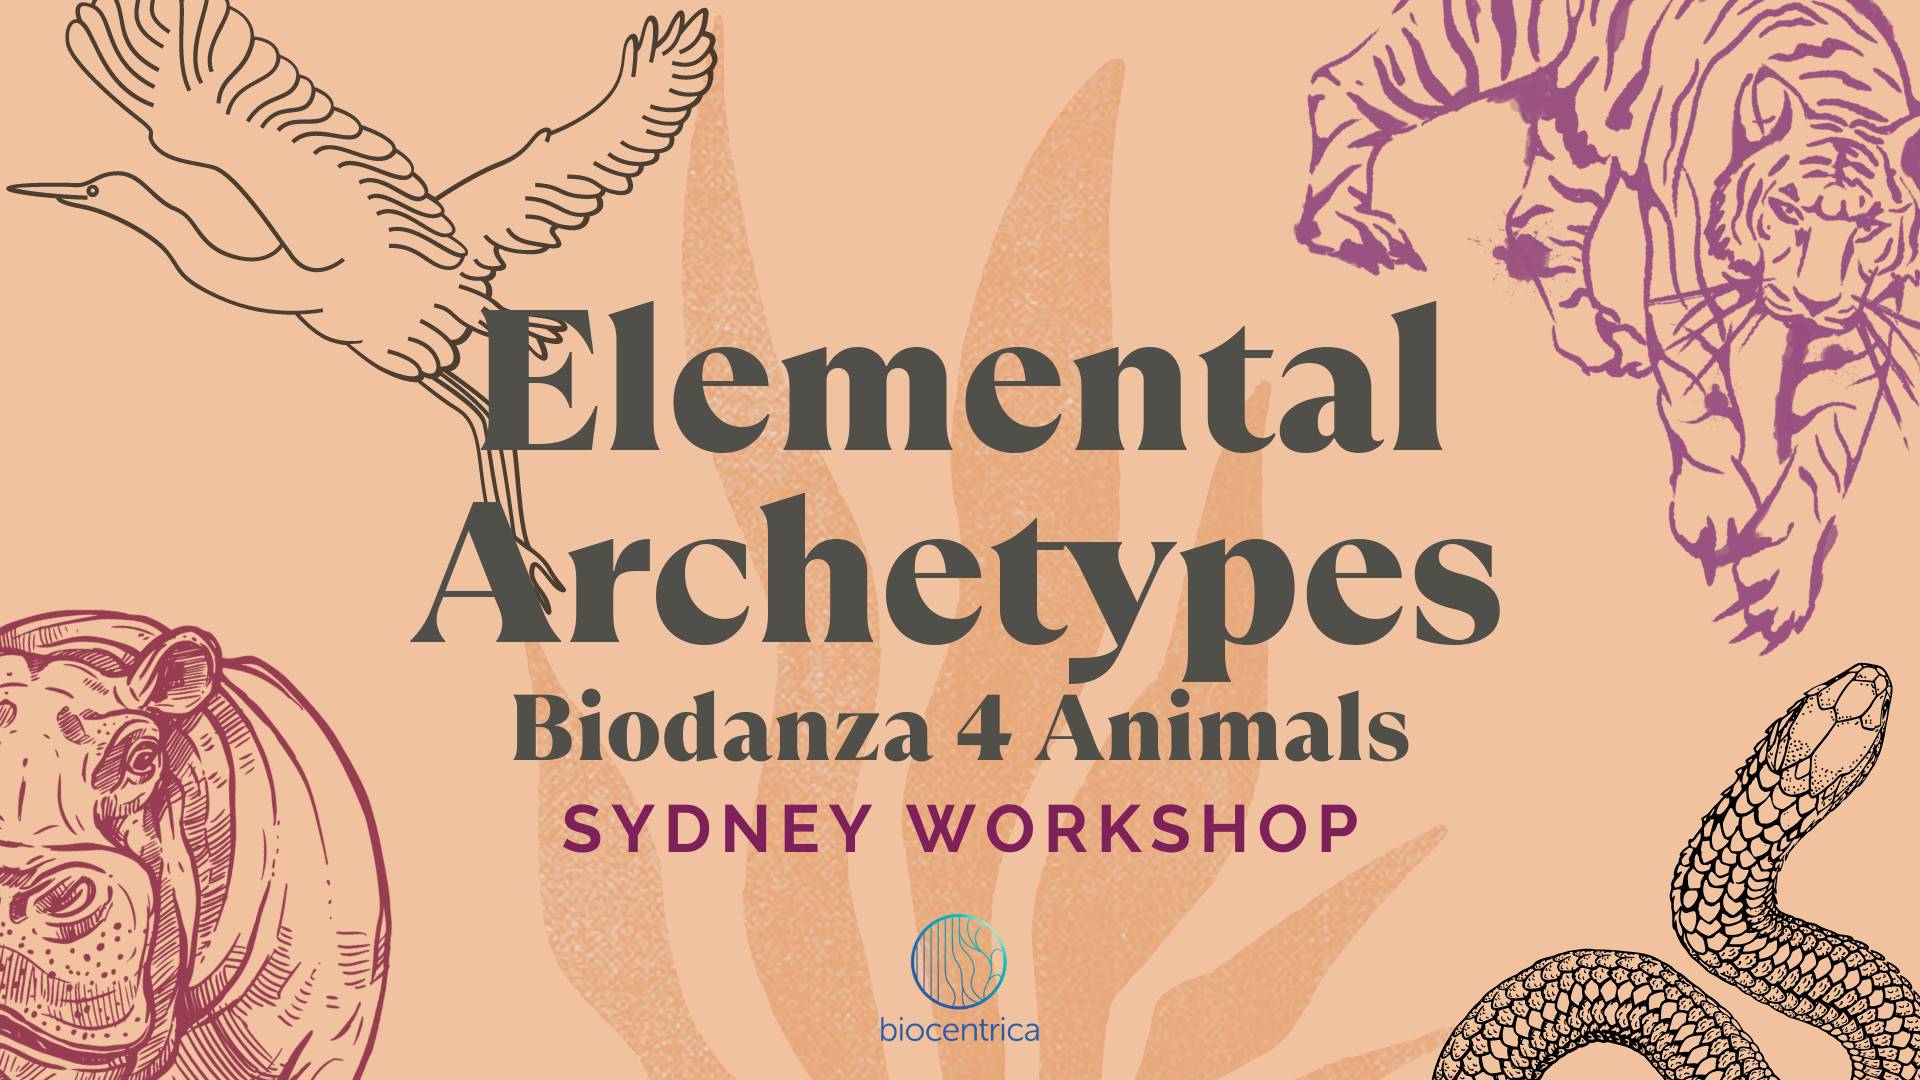 Biodanza workshop Sydney Archetypes